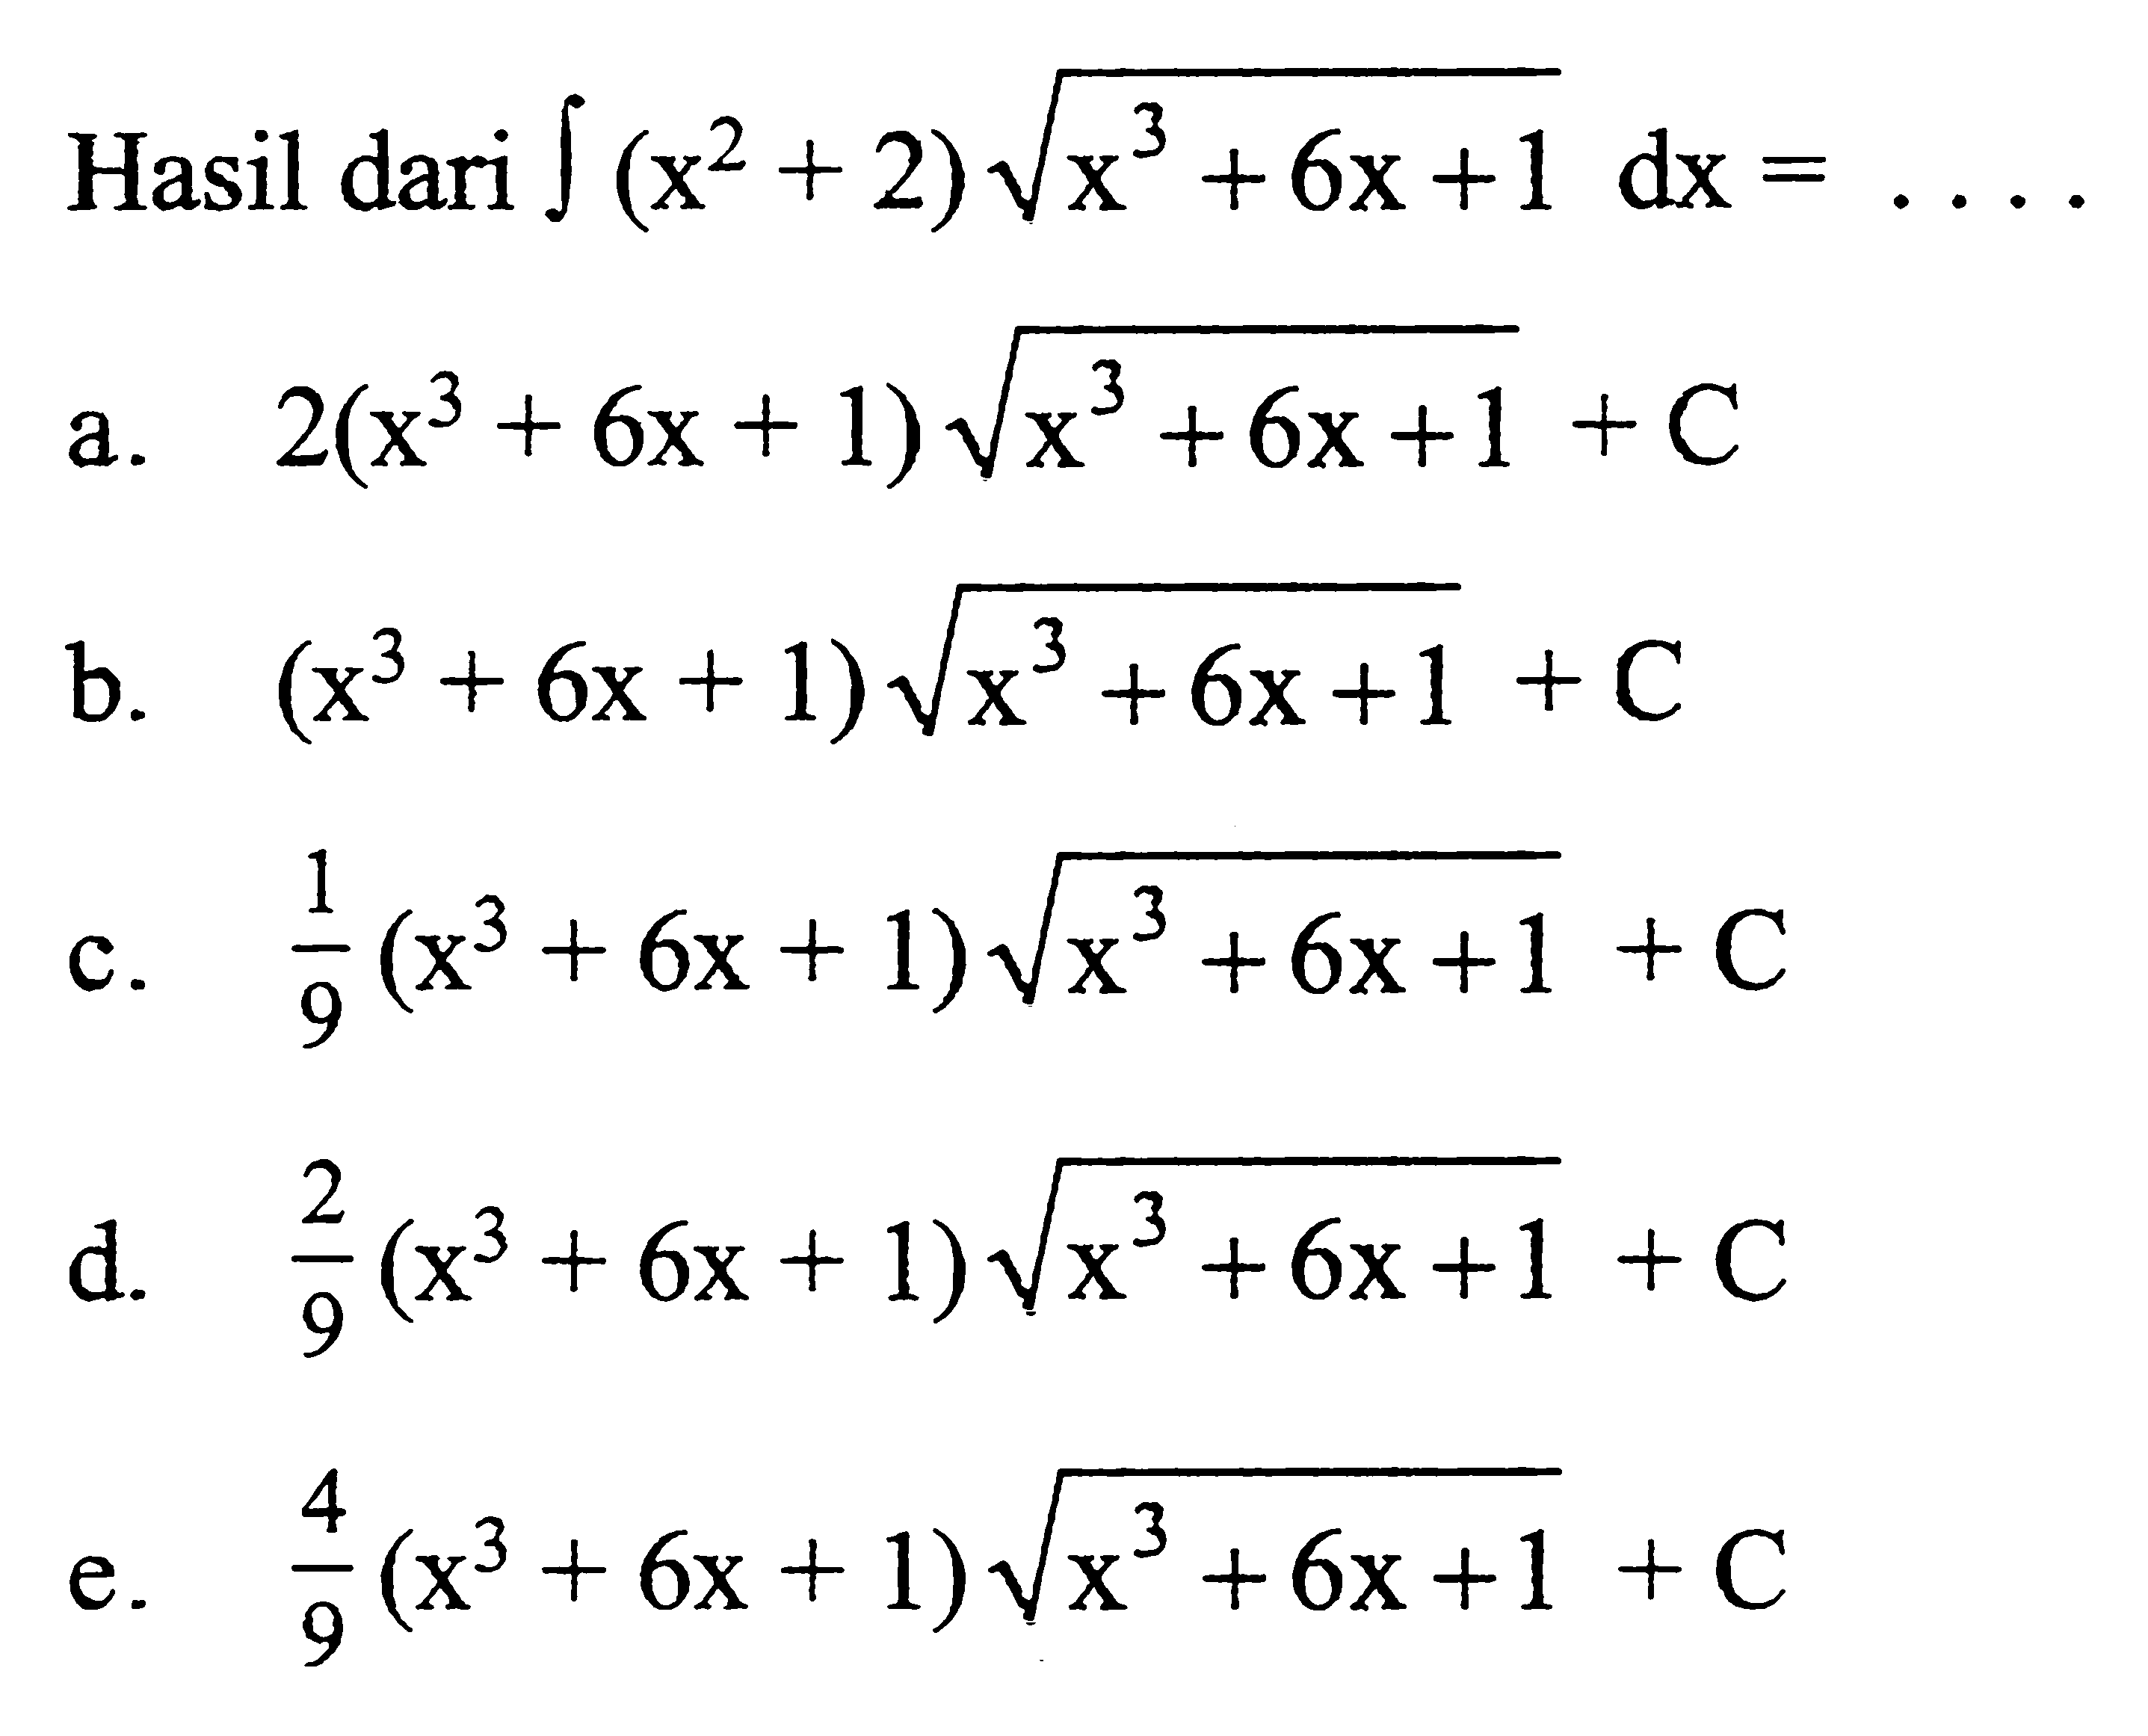 Hasil dari integral (x^2+2) akar(x^3+6x+1) dx=...